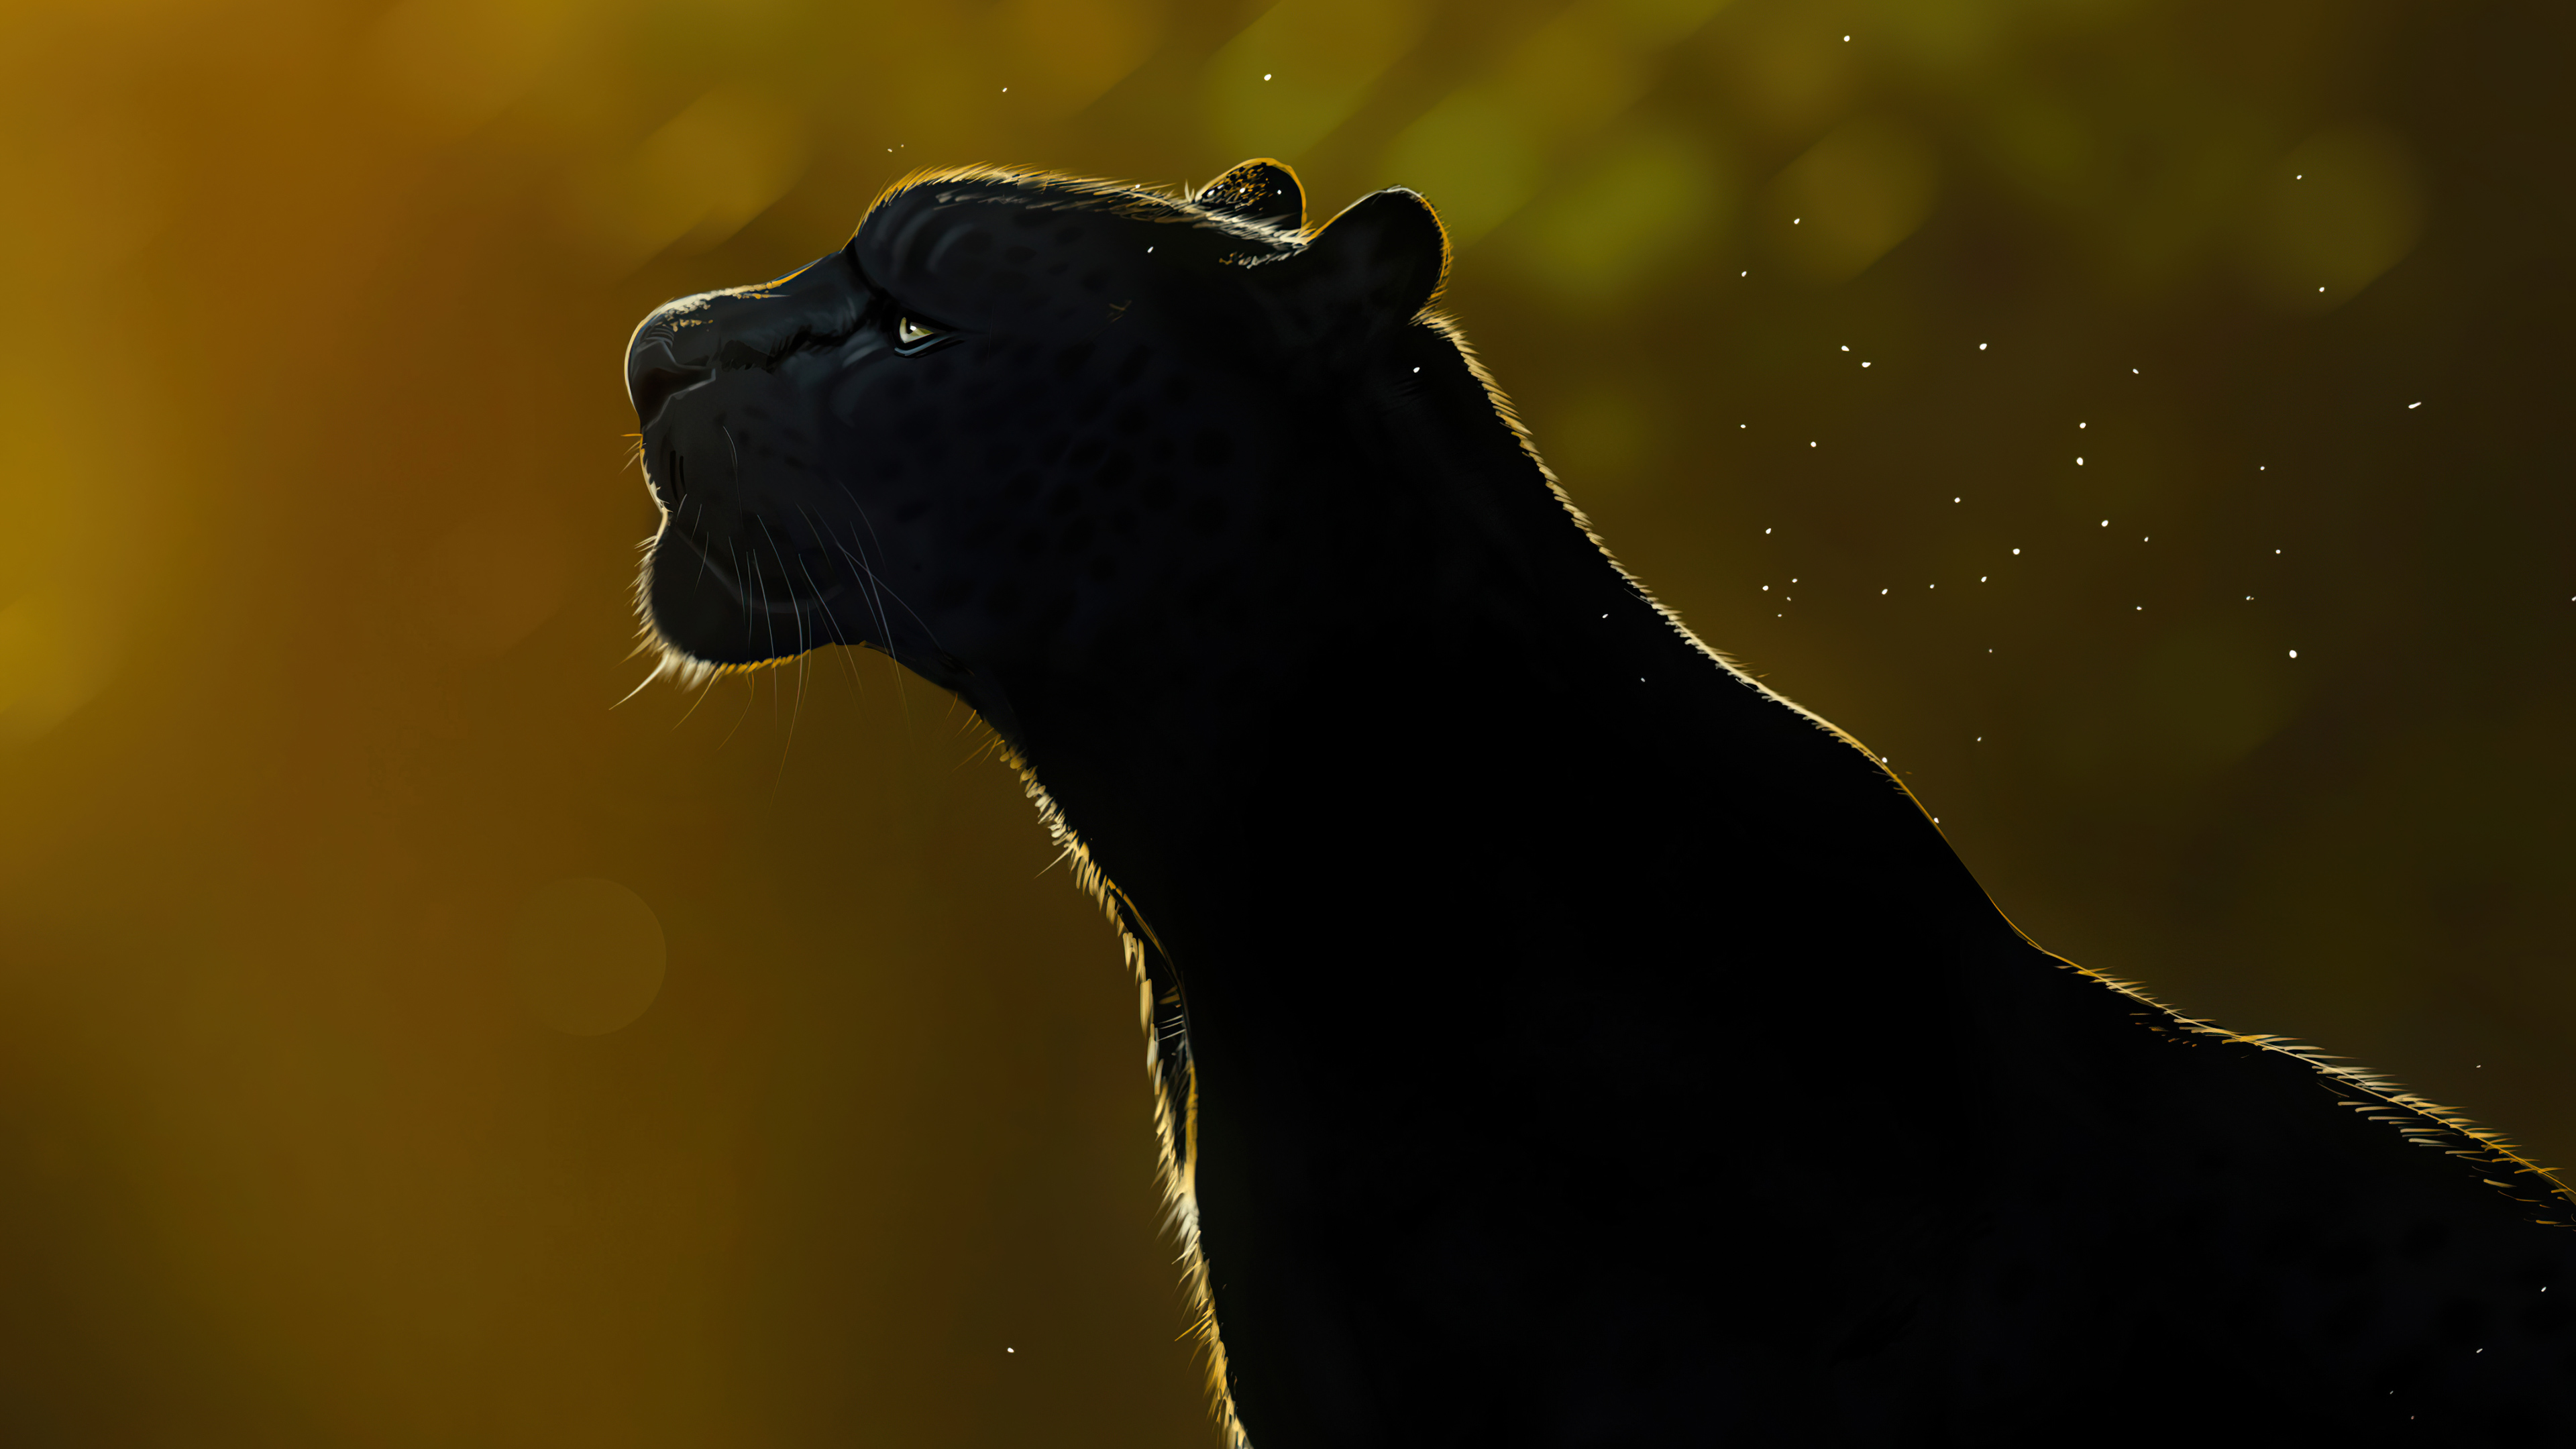 Free Spirit Black Panther 4k Wallpaper,HD Artist Wallpapers,4k